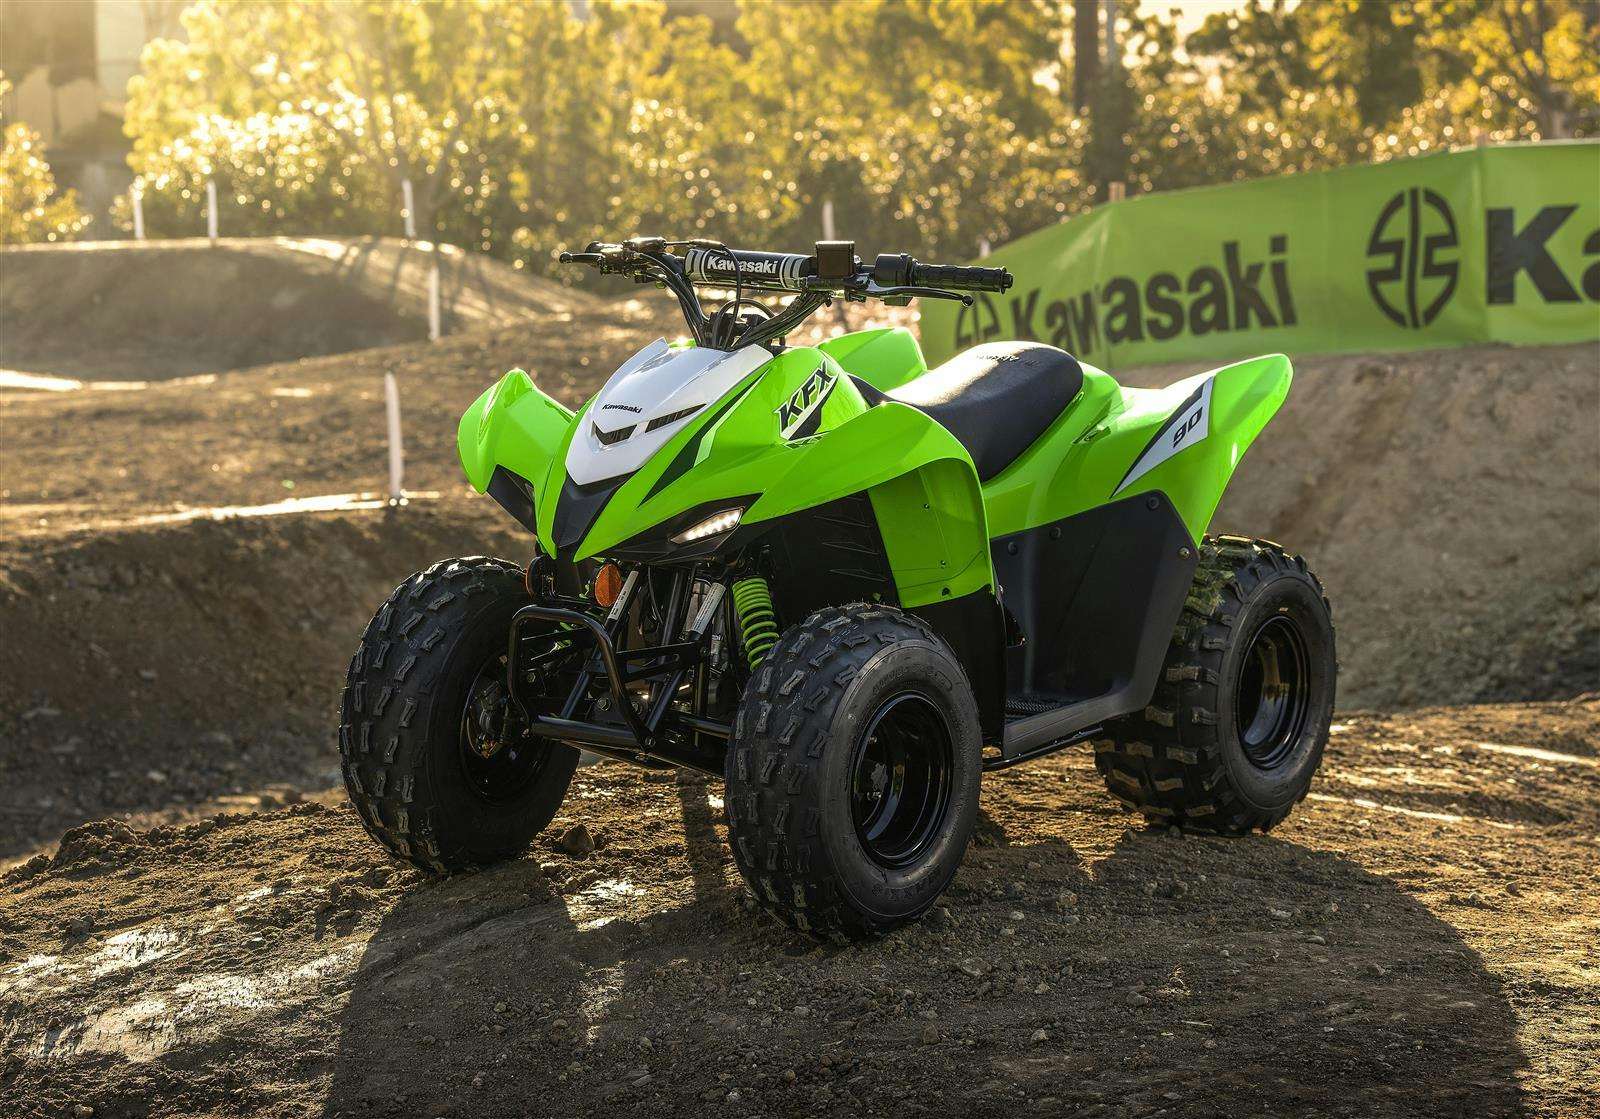 Kawasaki KFX90 ATV